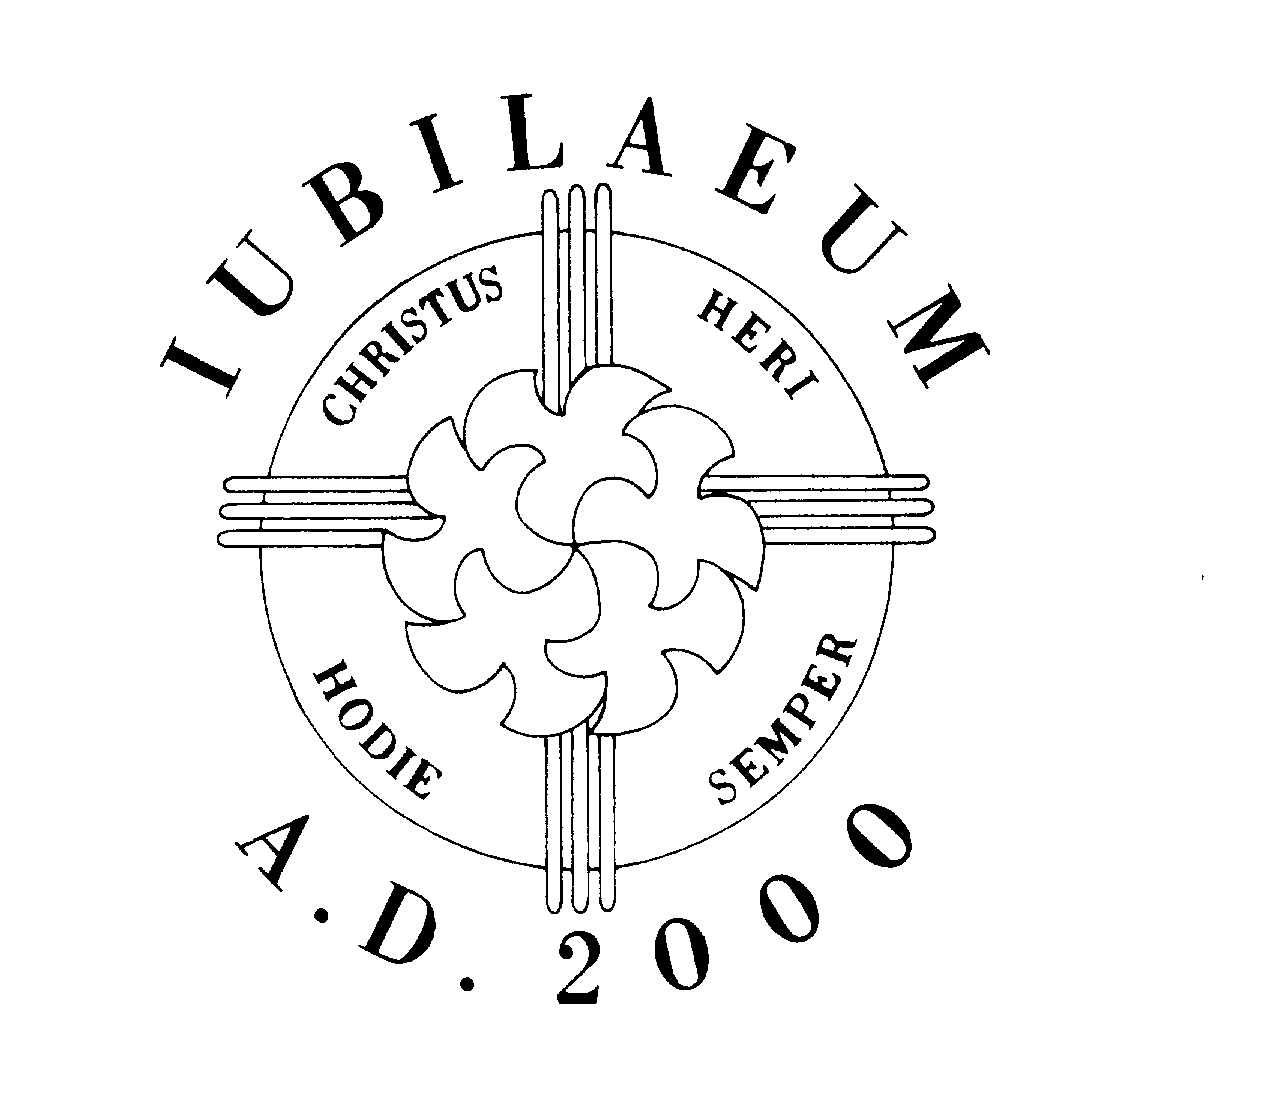 Trademark Logo IUBILAEUM A.D. 2000 CHRISTUS HERI HODIE SEMPER